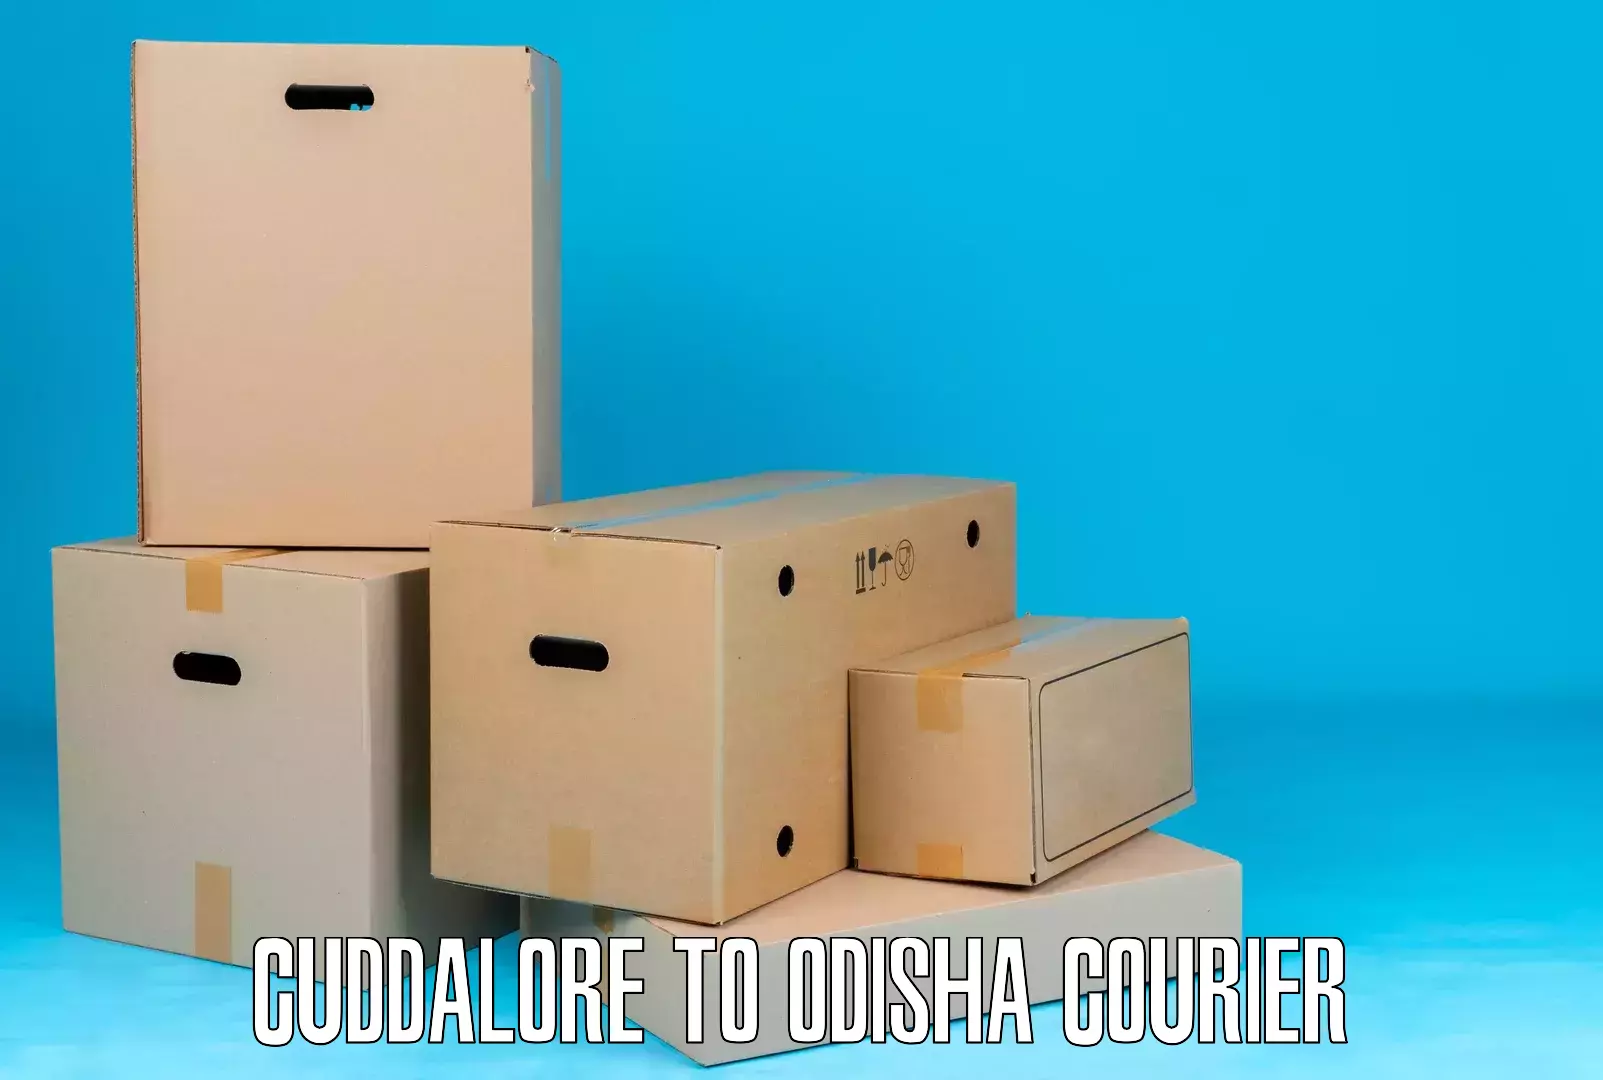 Smart parcel delivery Cuddalore to Udala